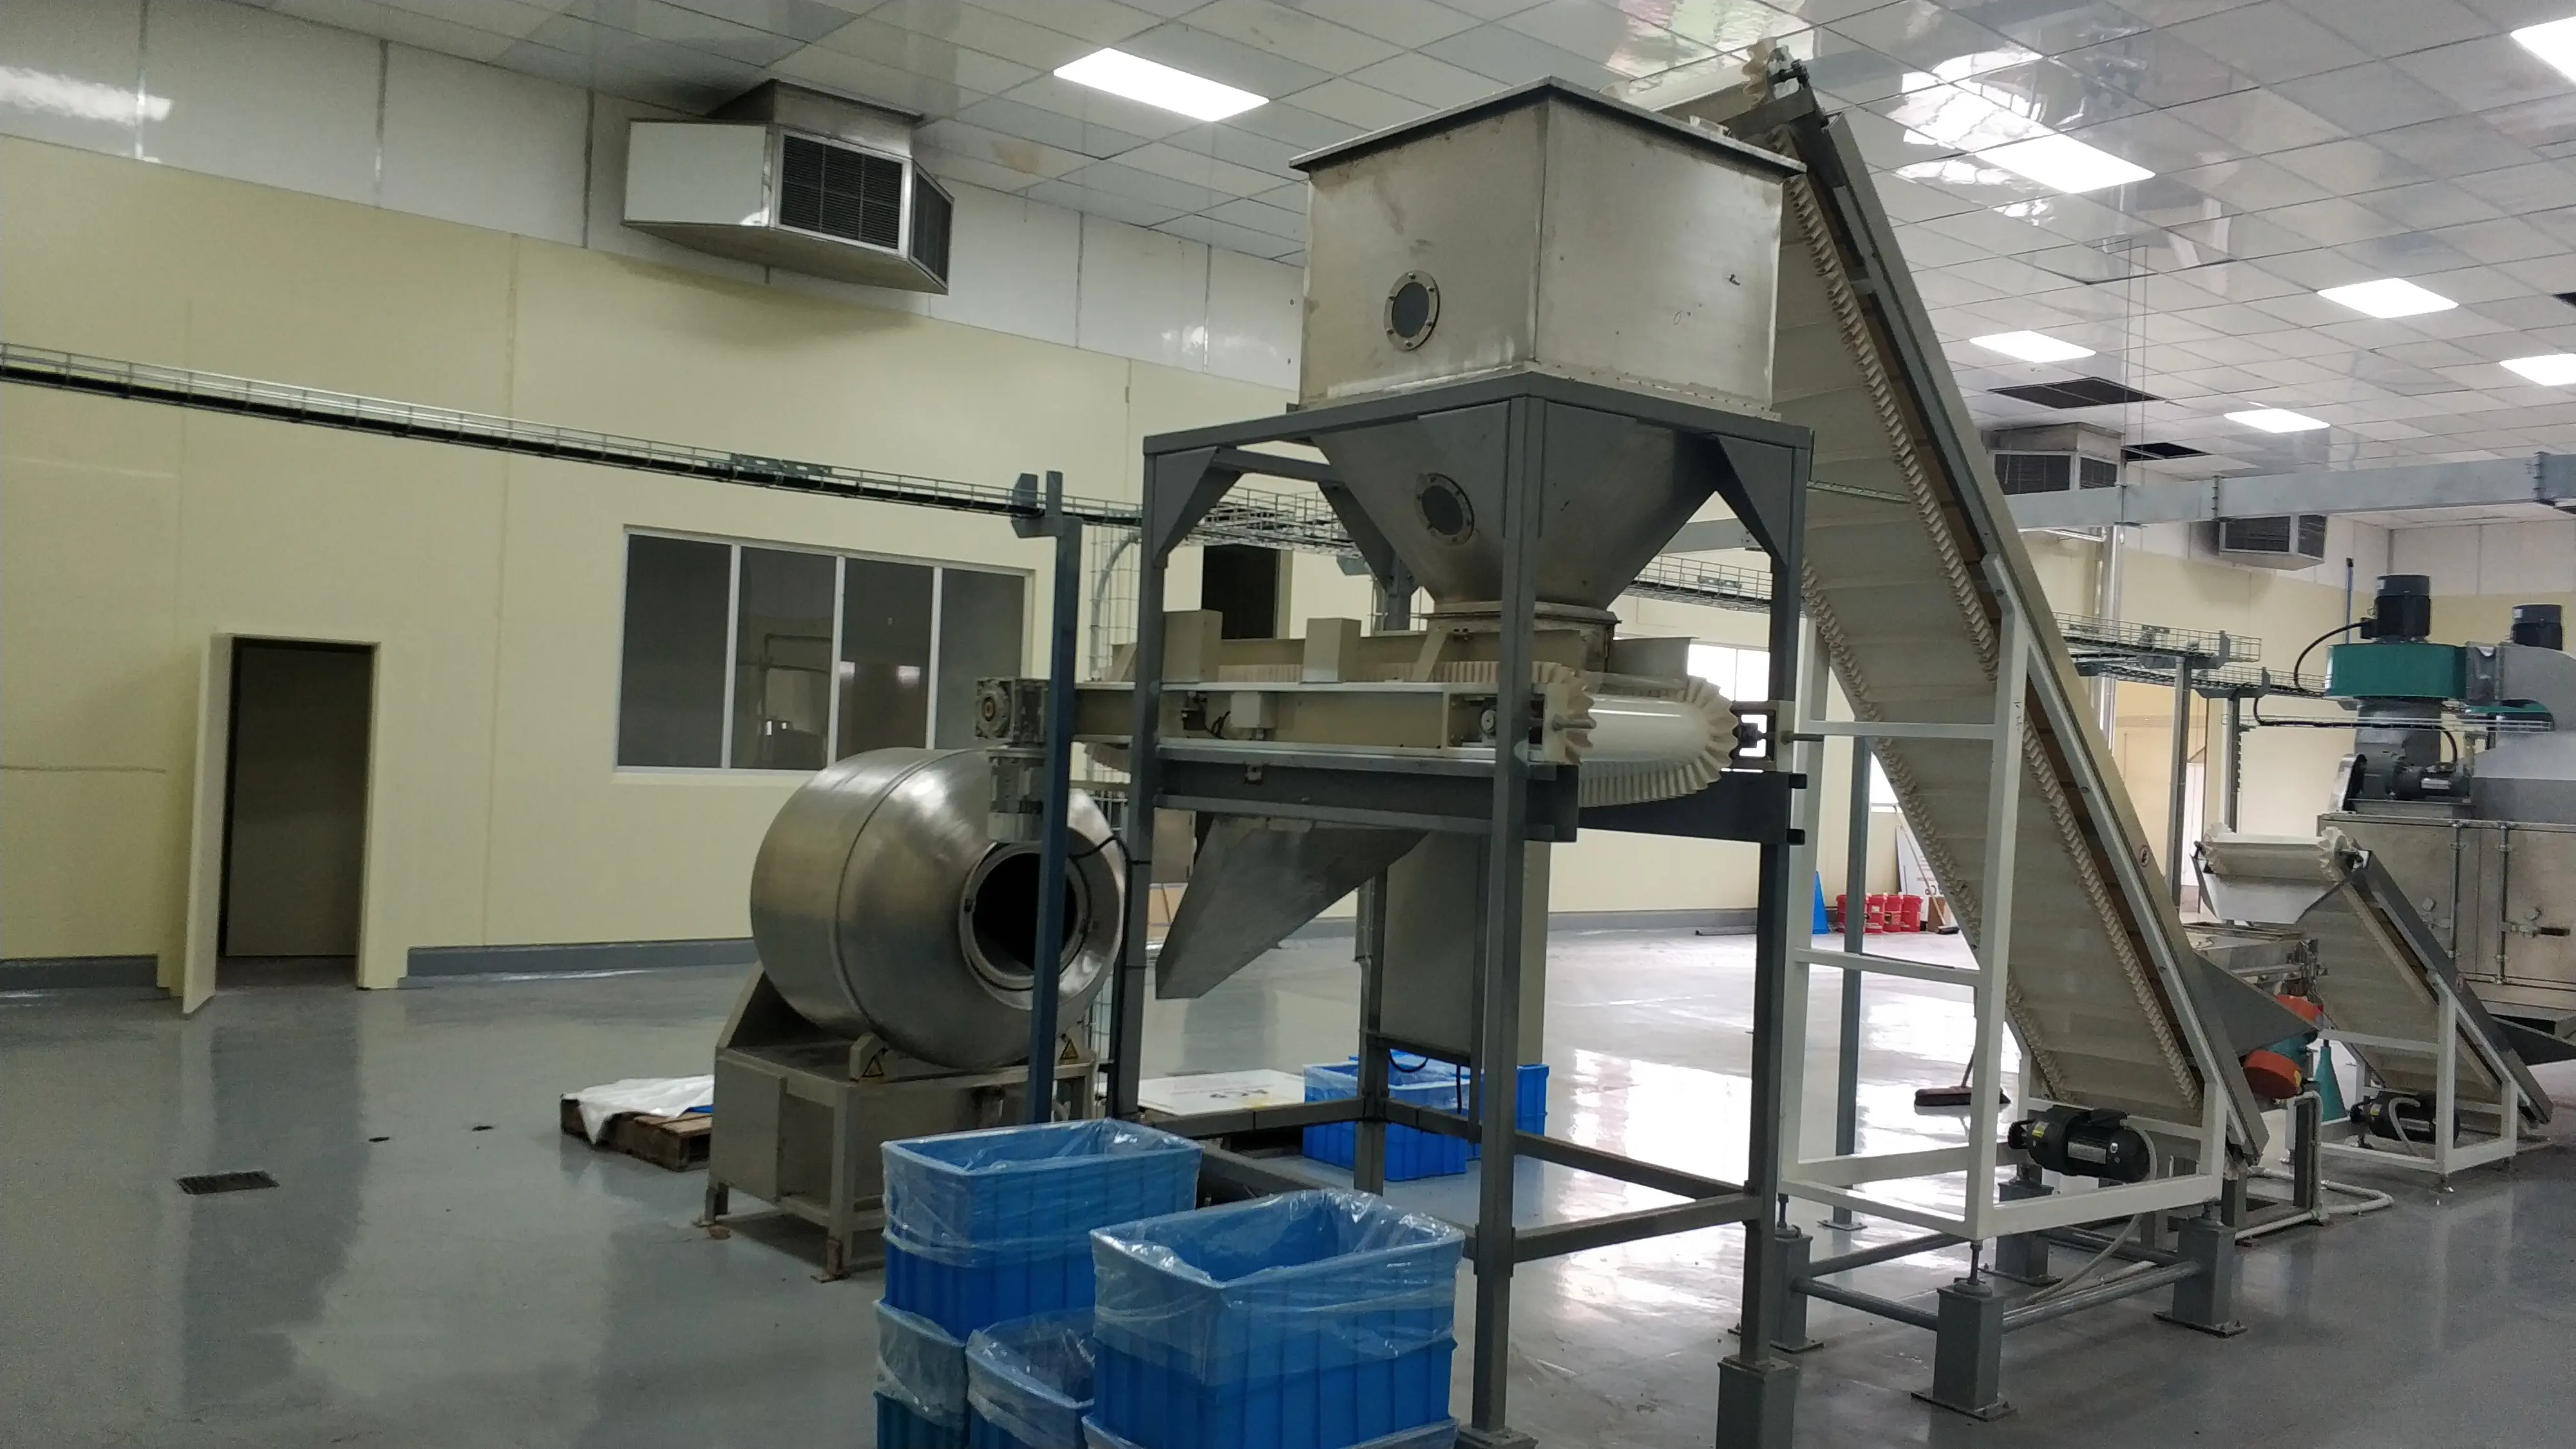 फैक्टरी हर्बल नमक के लिए विभिन्न स्नैक फूड ड्रम चिकन मूंगफली मसाला मशीन का निर्माण करती है